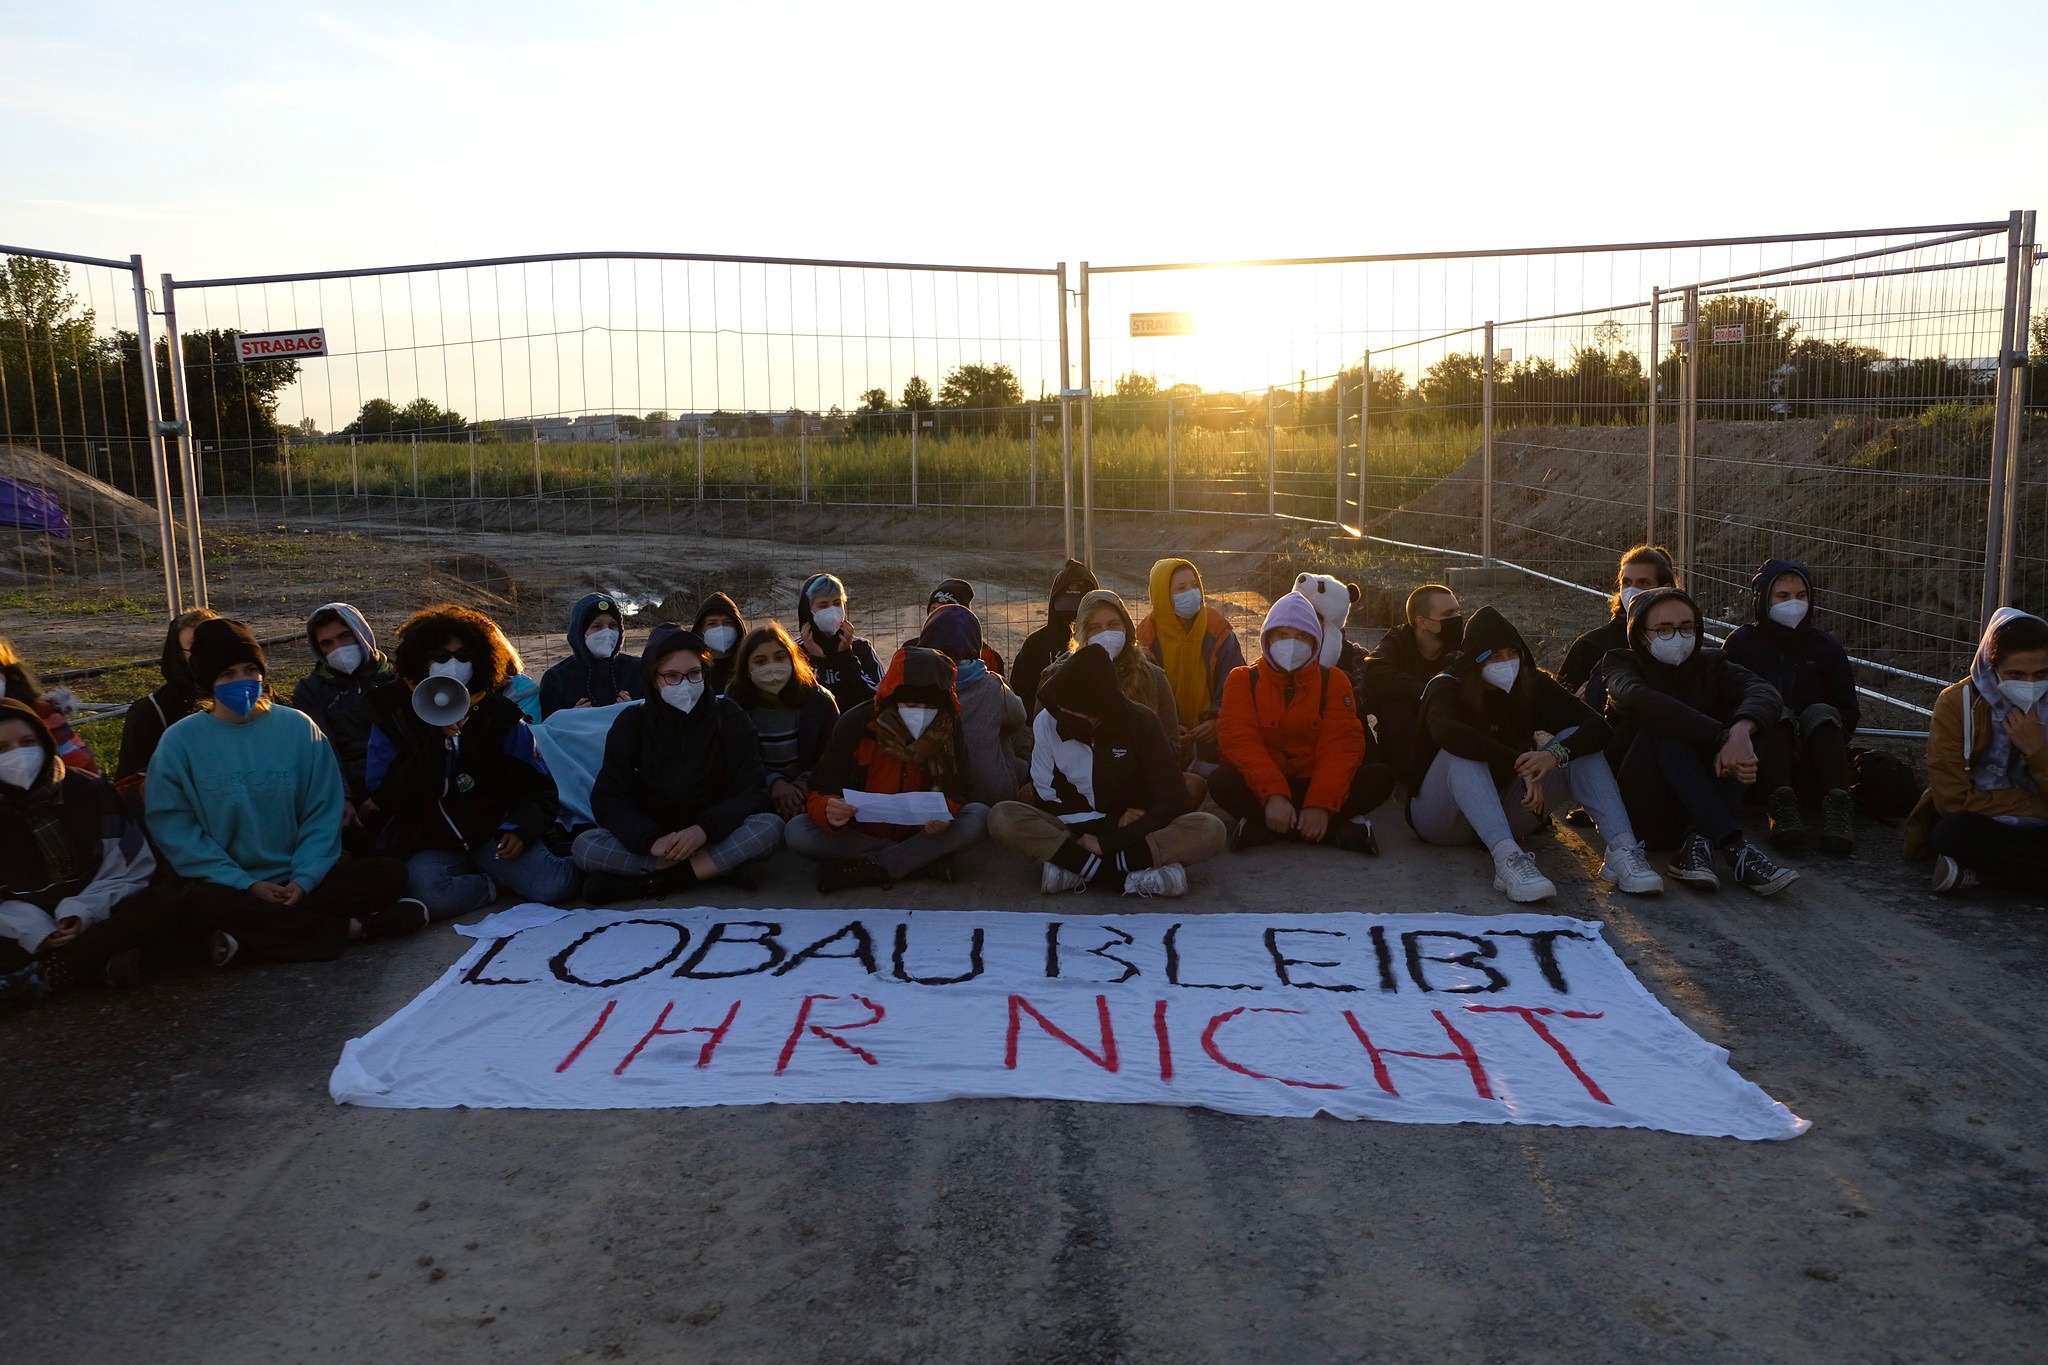 Presseaussendung: 100 Aktivist:innen blockieren Bau der Stadtautobahn